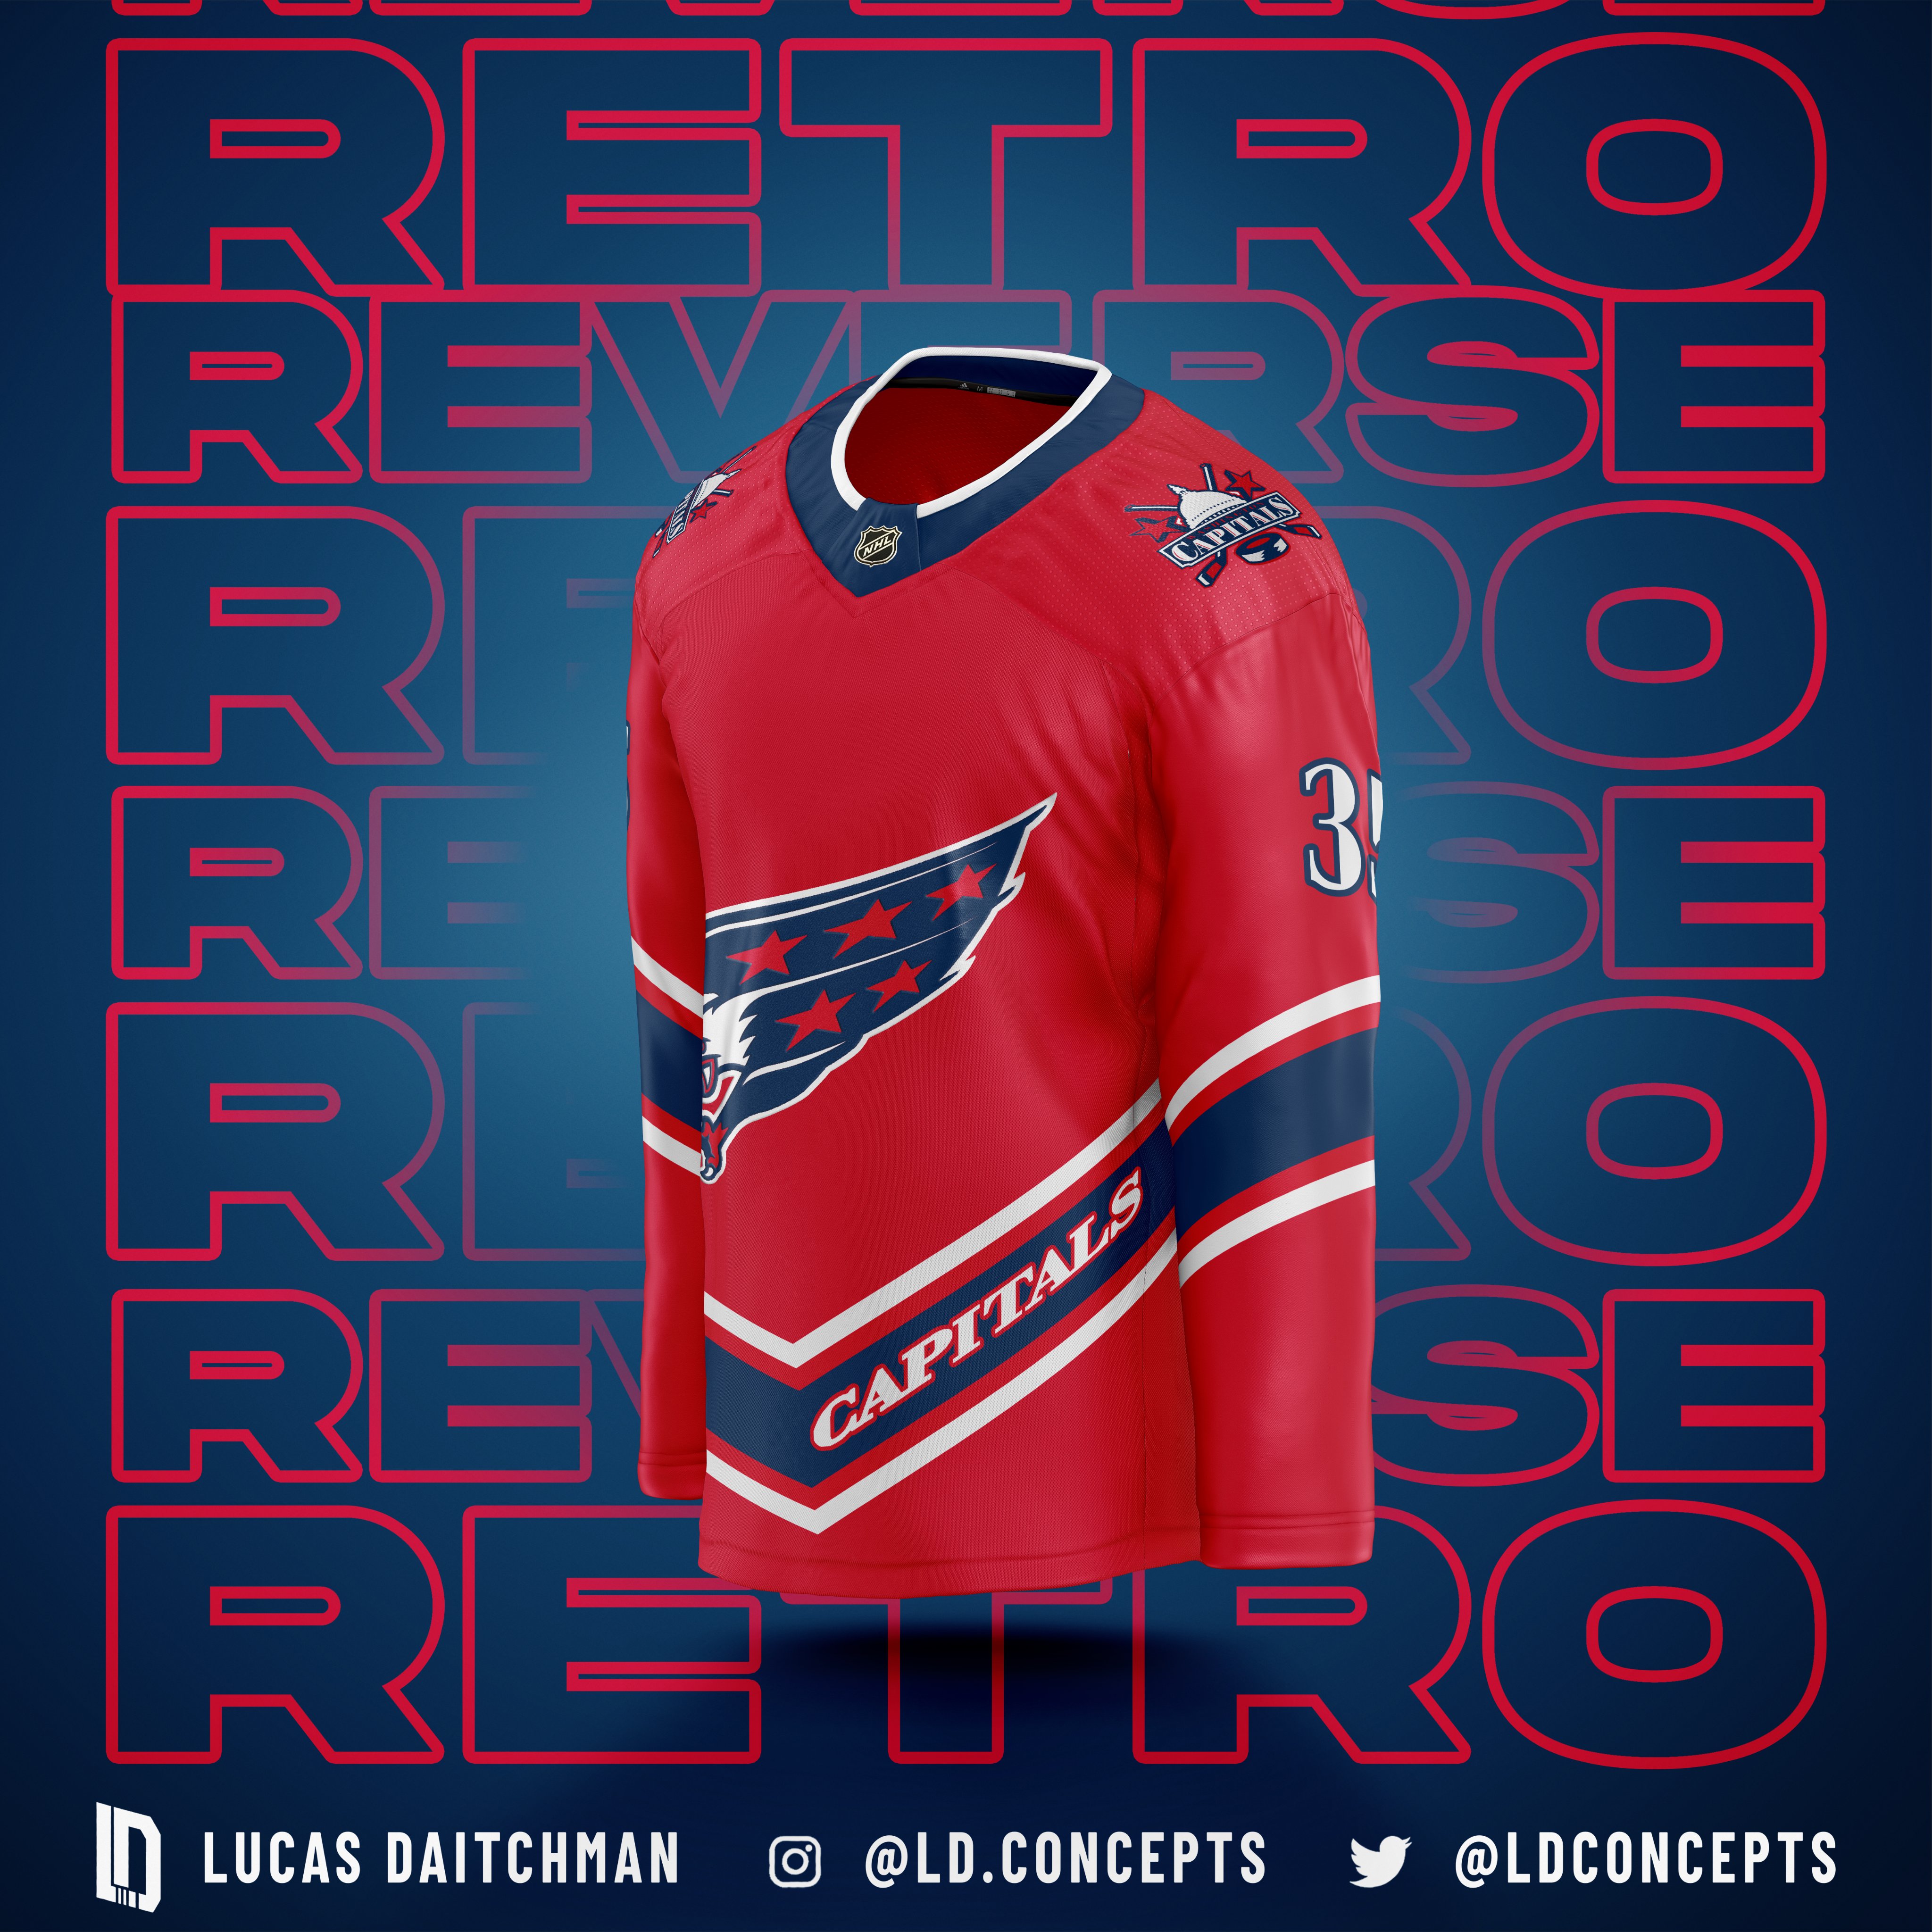 Washington Capitals Reverse Retro jerseys are now available